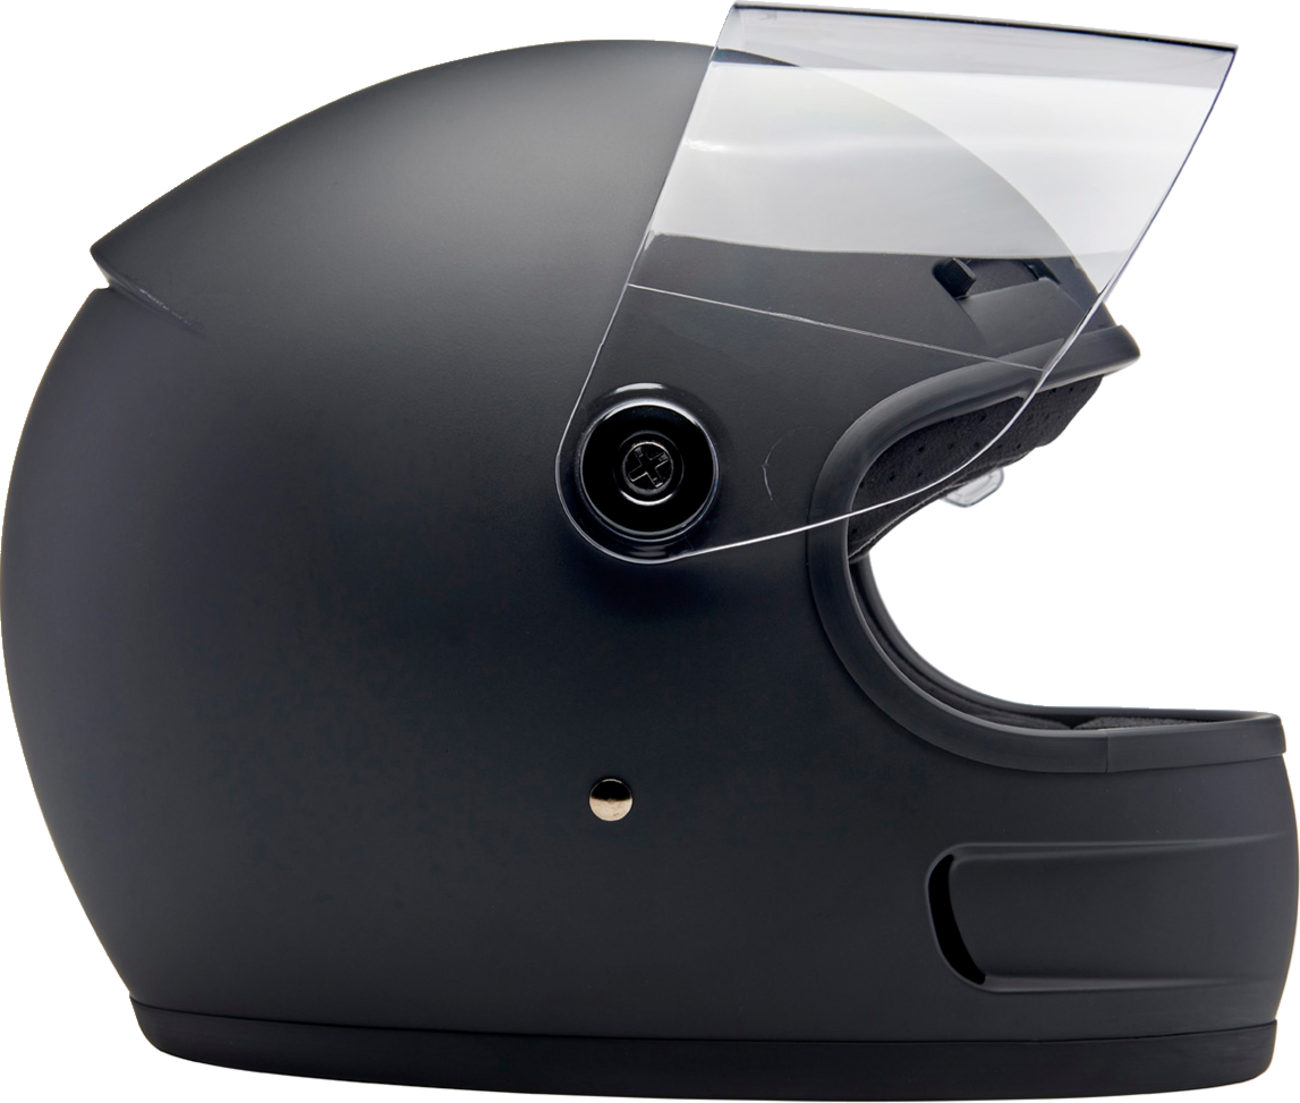 BILTWELL Gringo SV Helmet - Flat Black - XL 1006-201-505